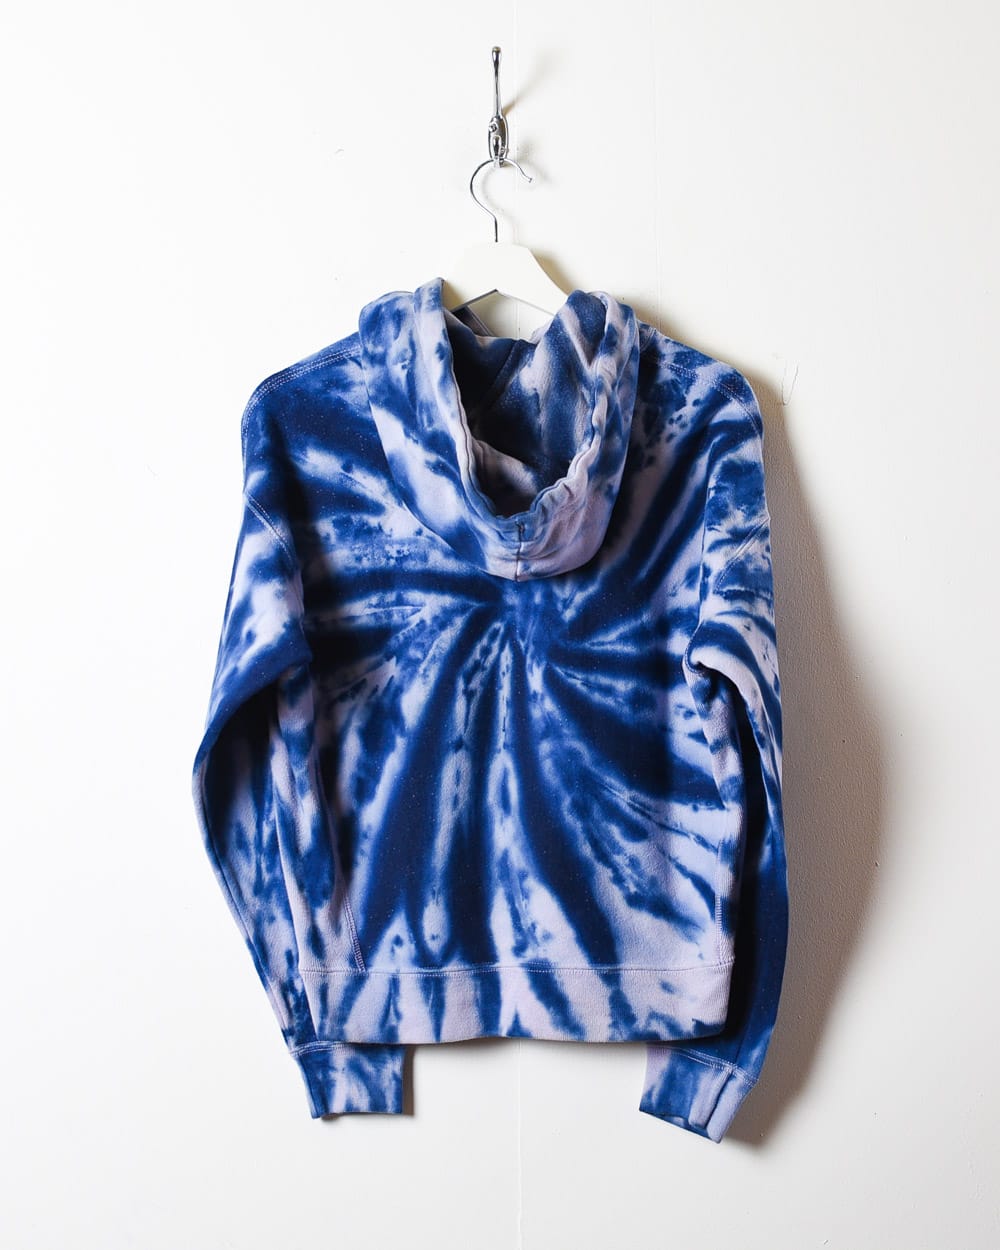 Blue Champion Reverse Weave Tie-Dye Hoodie - Small Women's